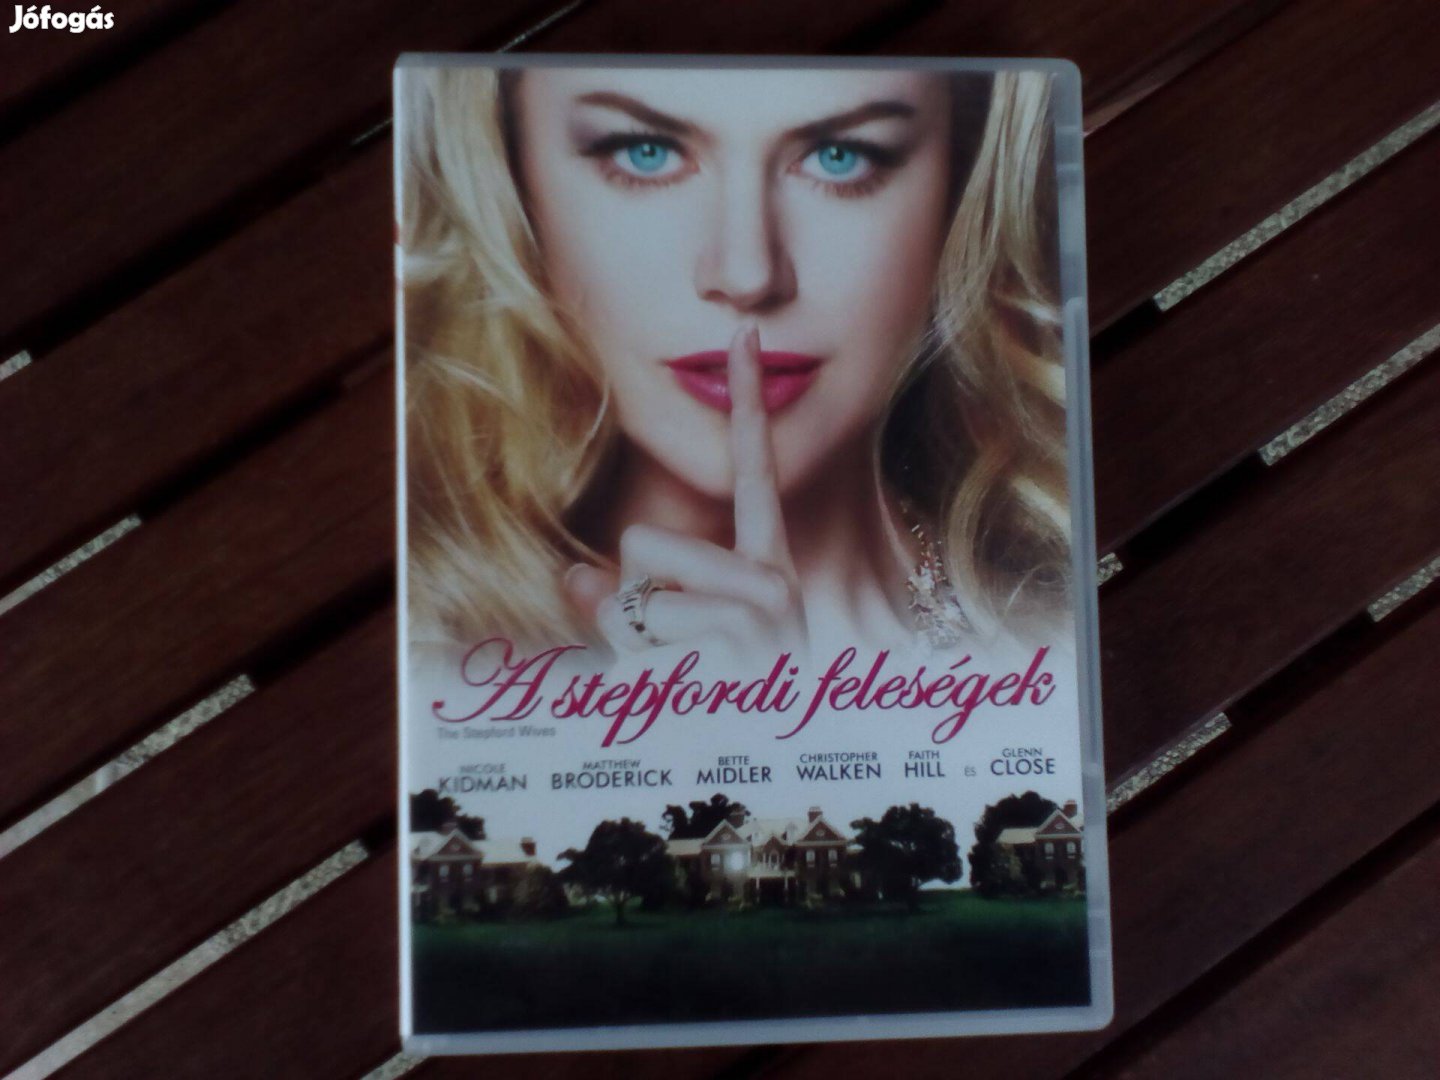 A stepfordi feleségek - eredeti DVD